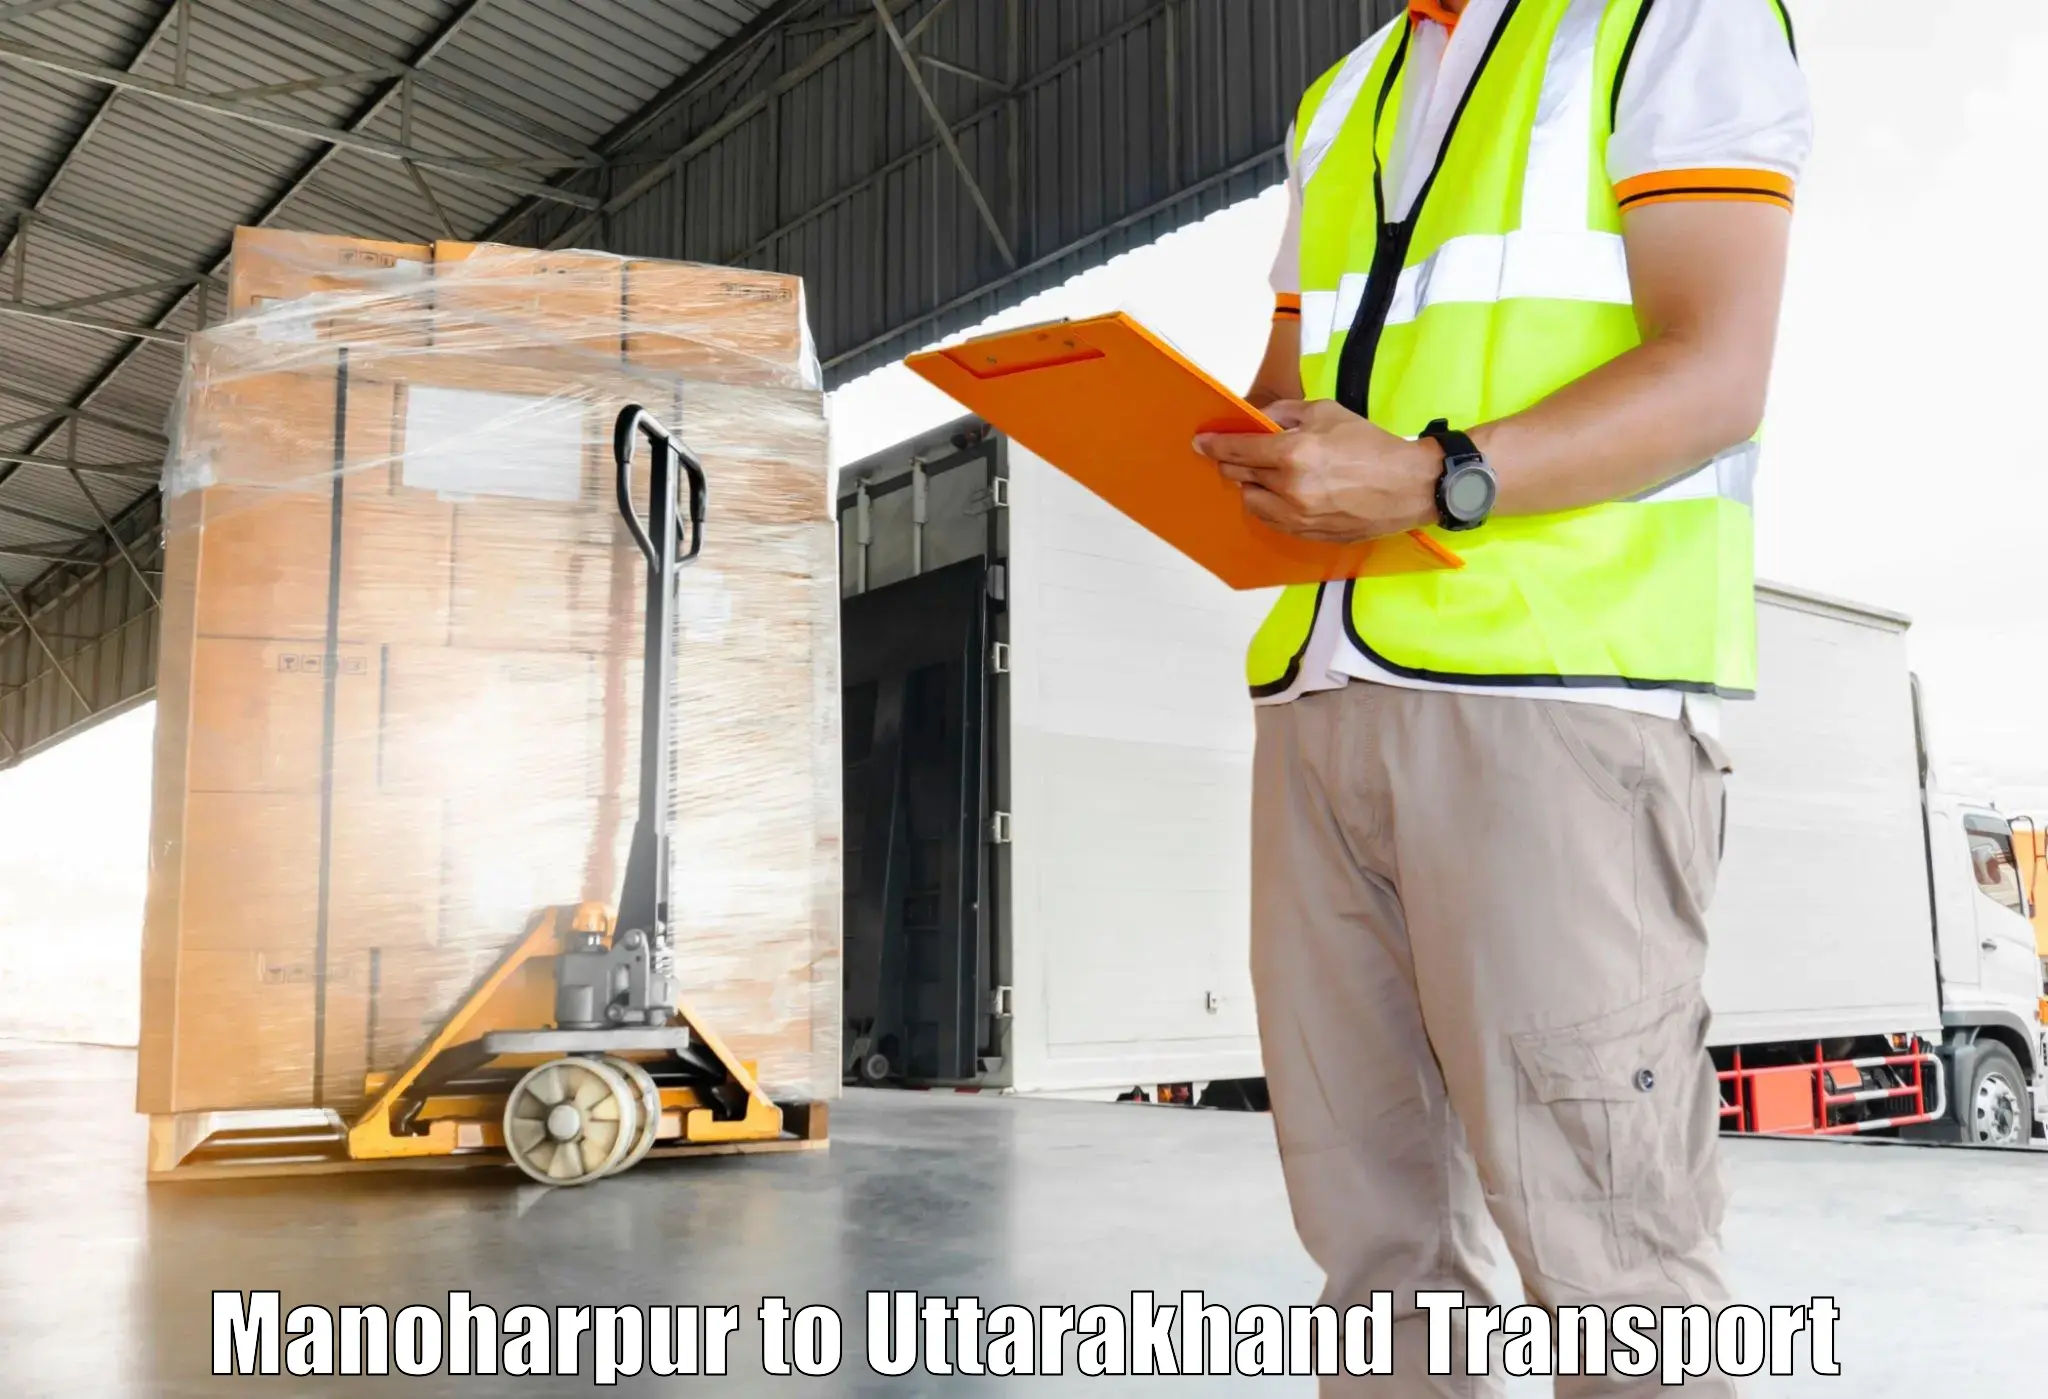 Lorry transport service Manoharpur to Nainital